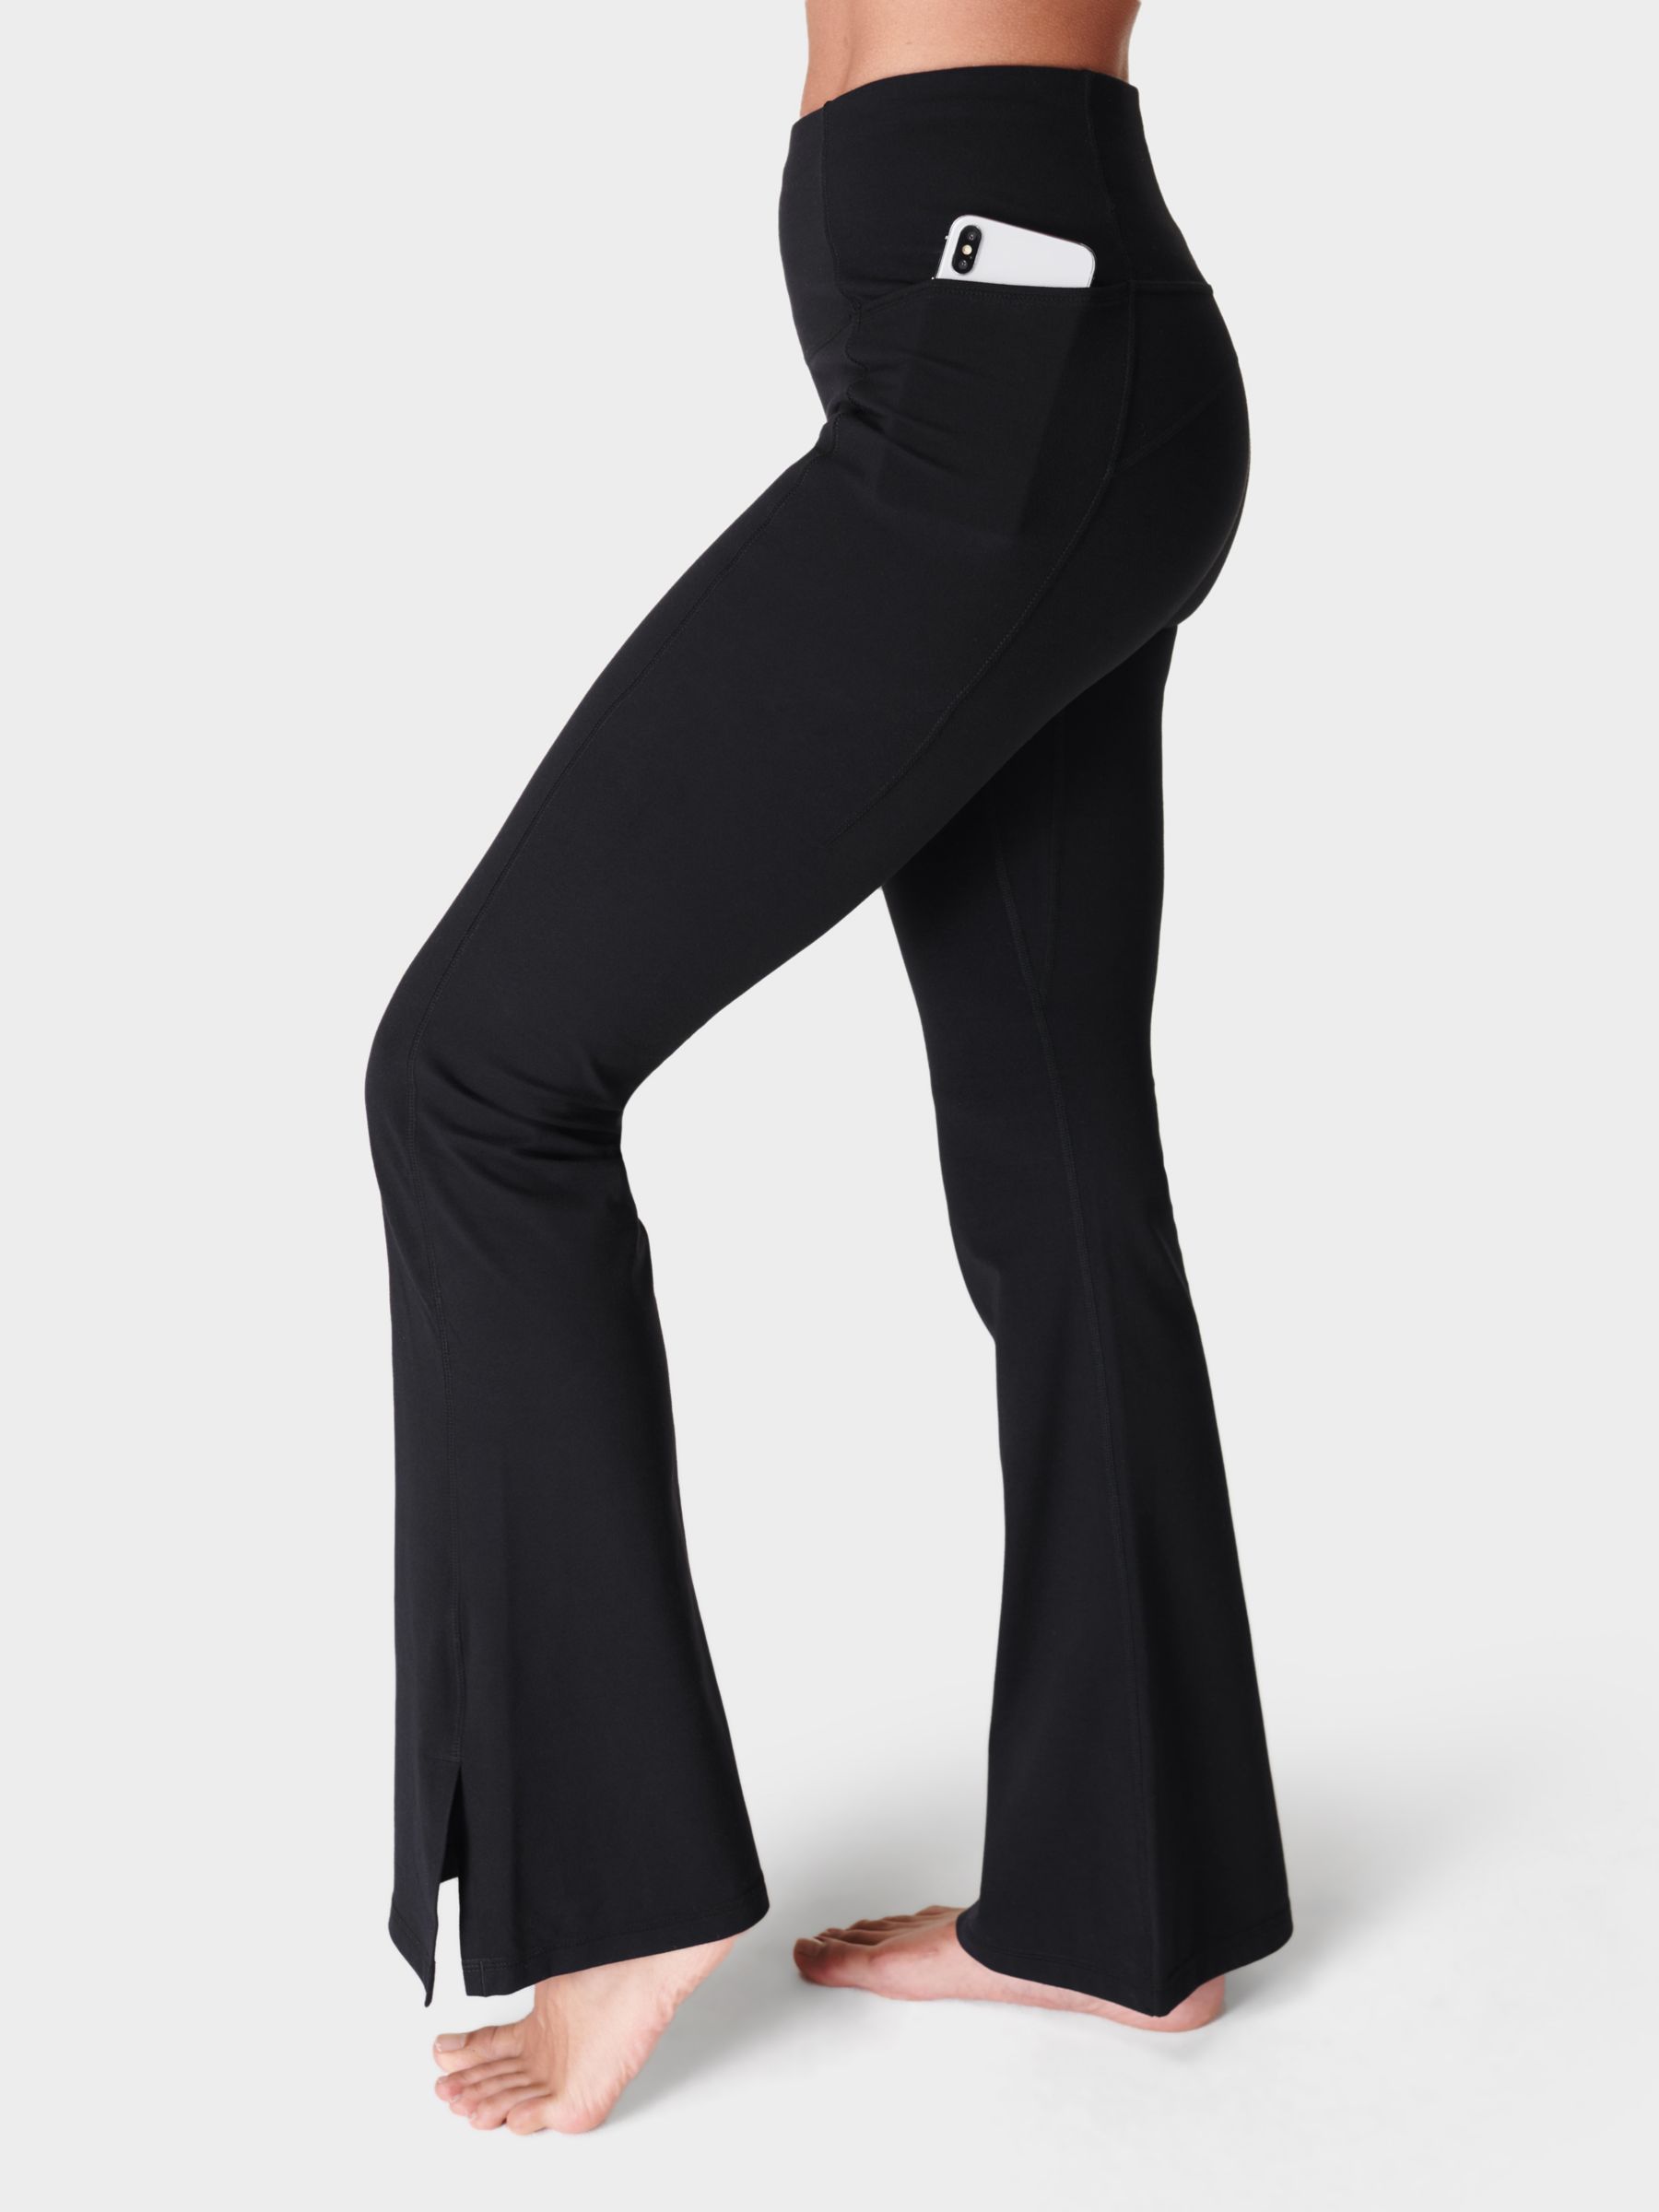 Супермягкие расклешенные брюки для йоги Sweaty Betty 30 дюймов, черные